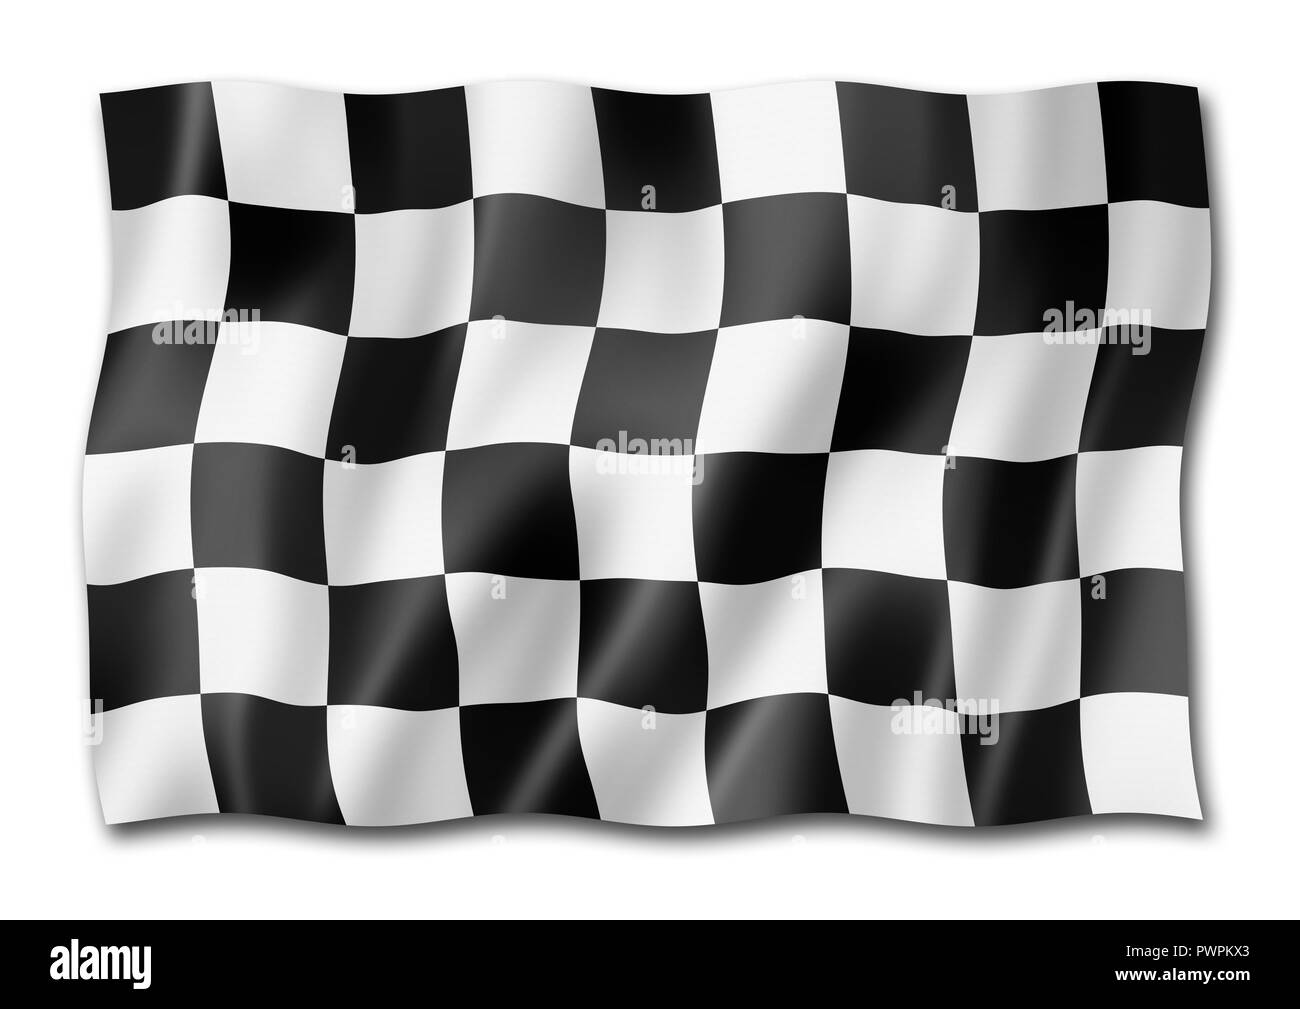 Fin de course automobile drapeau à damiers, le rendu en trois dimensions, isolated on white Banque D'Images